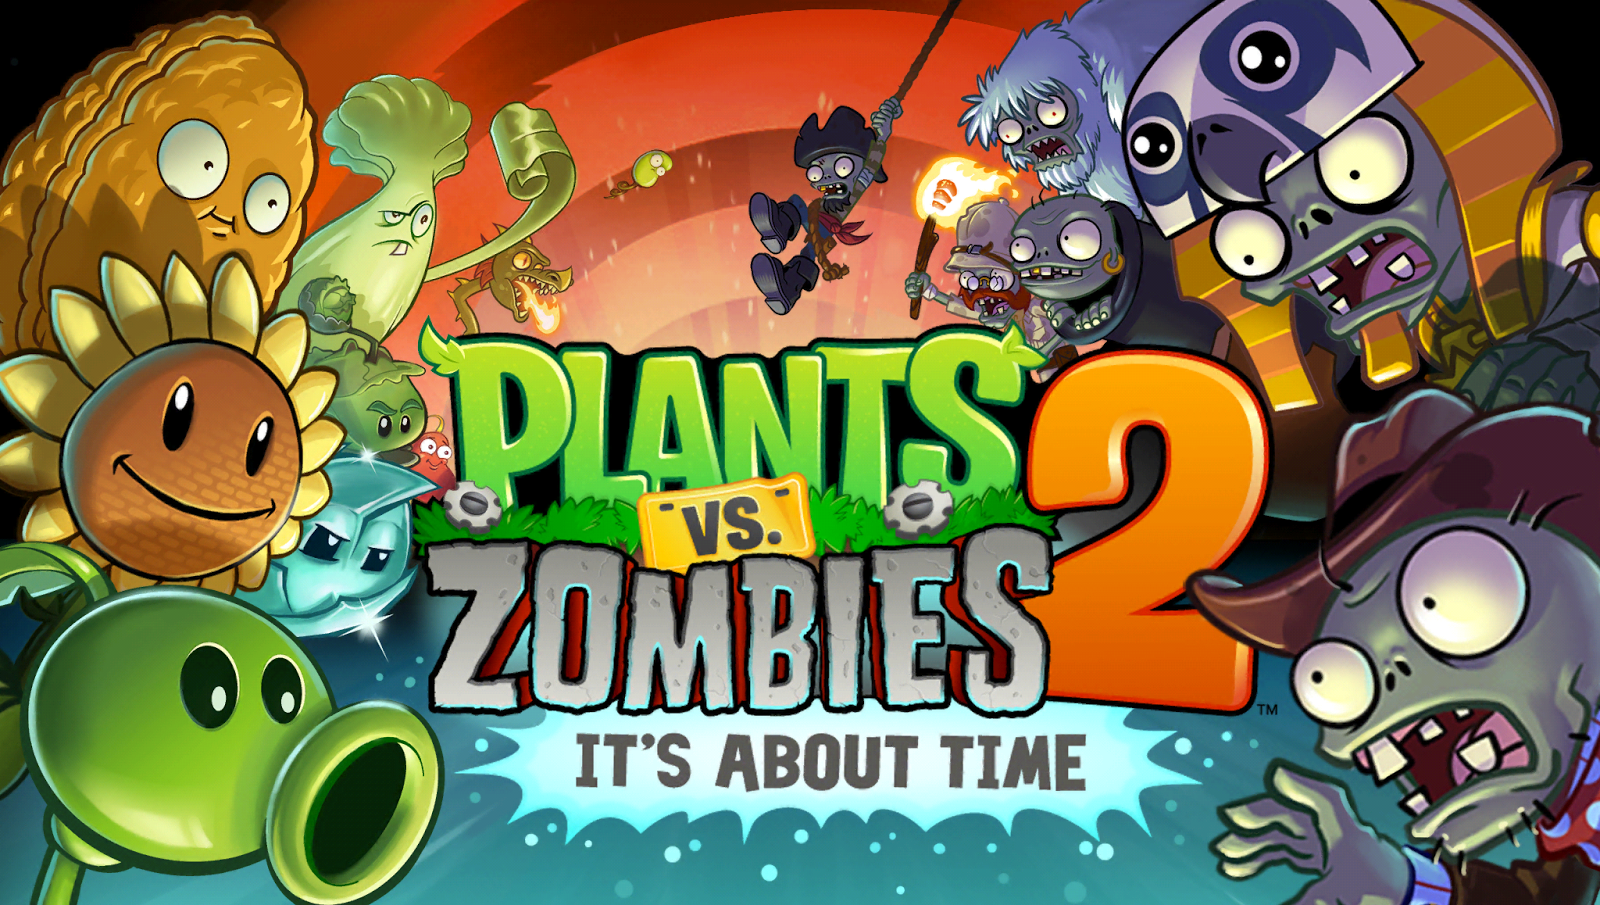 plants vs zombies adventures logo